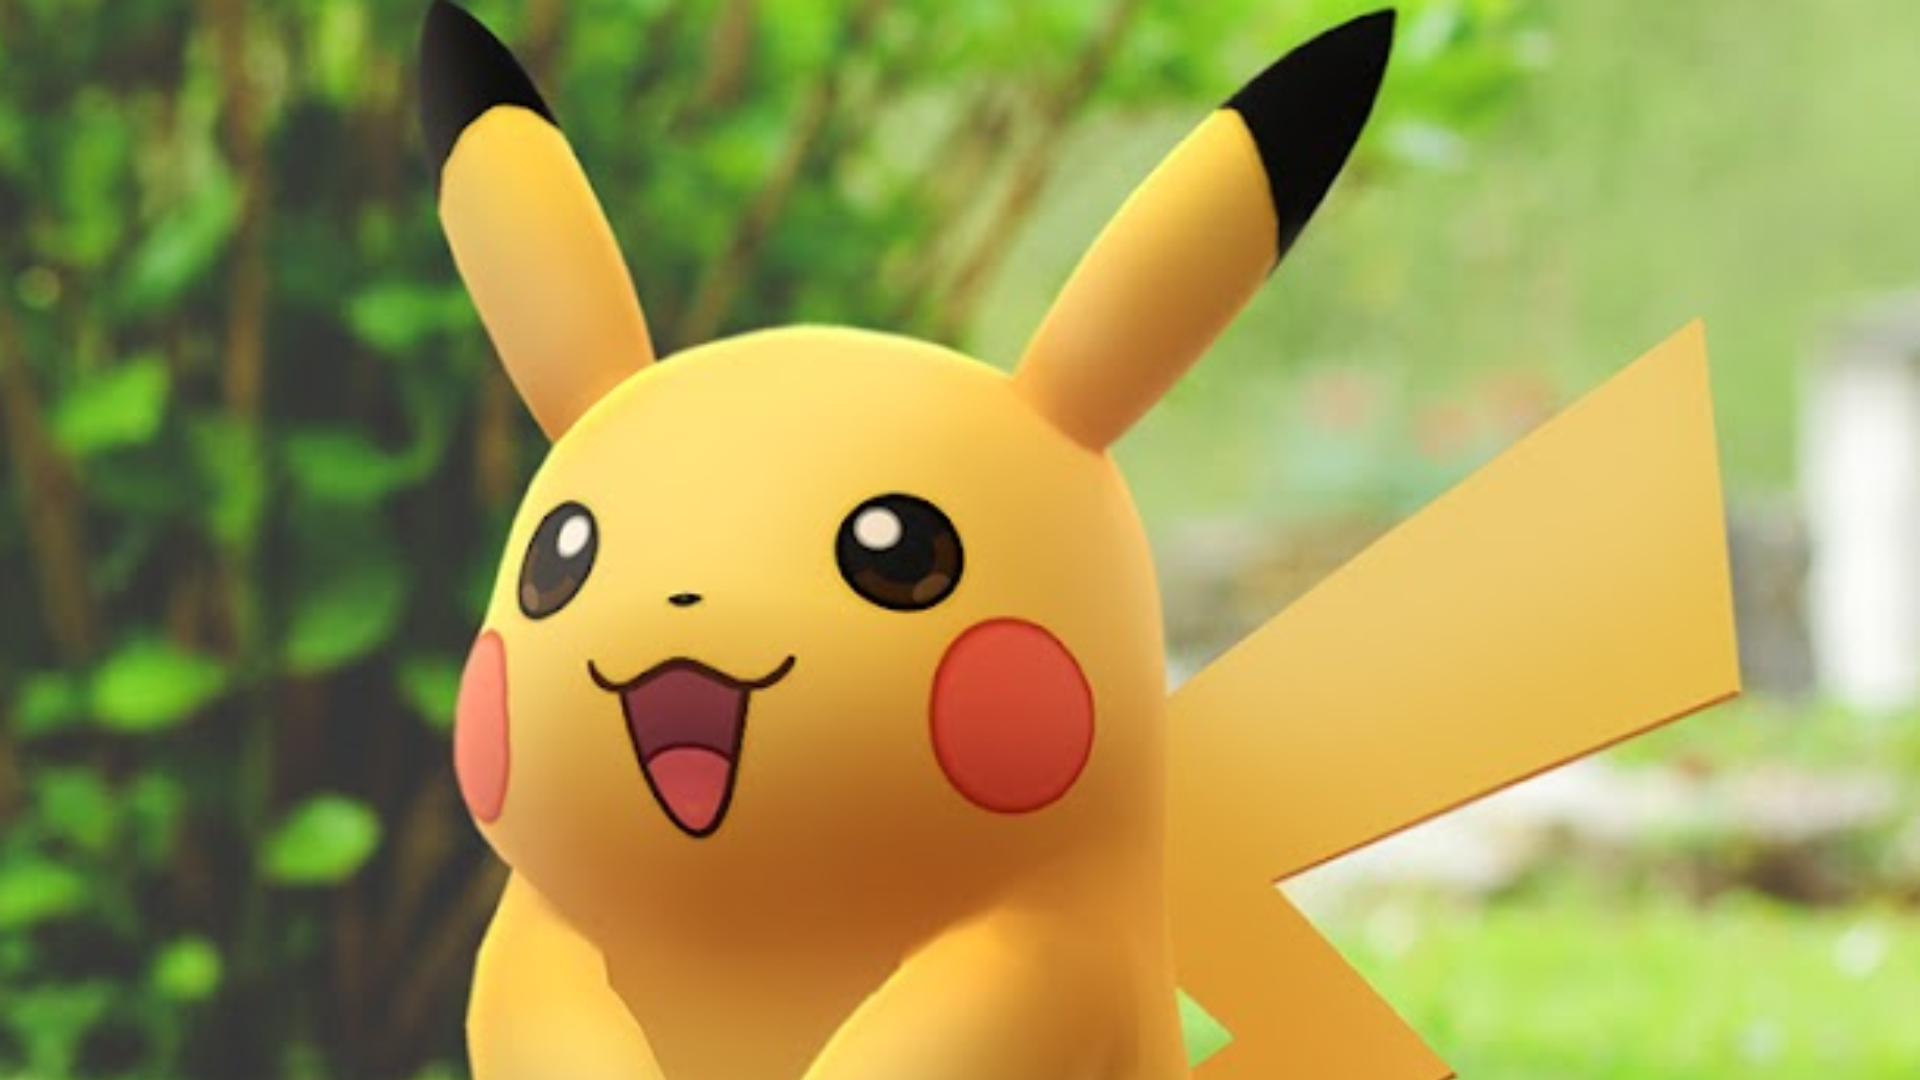 Prime Gaming Second Pokémon GO Bundle Now Available